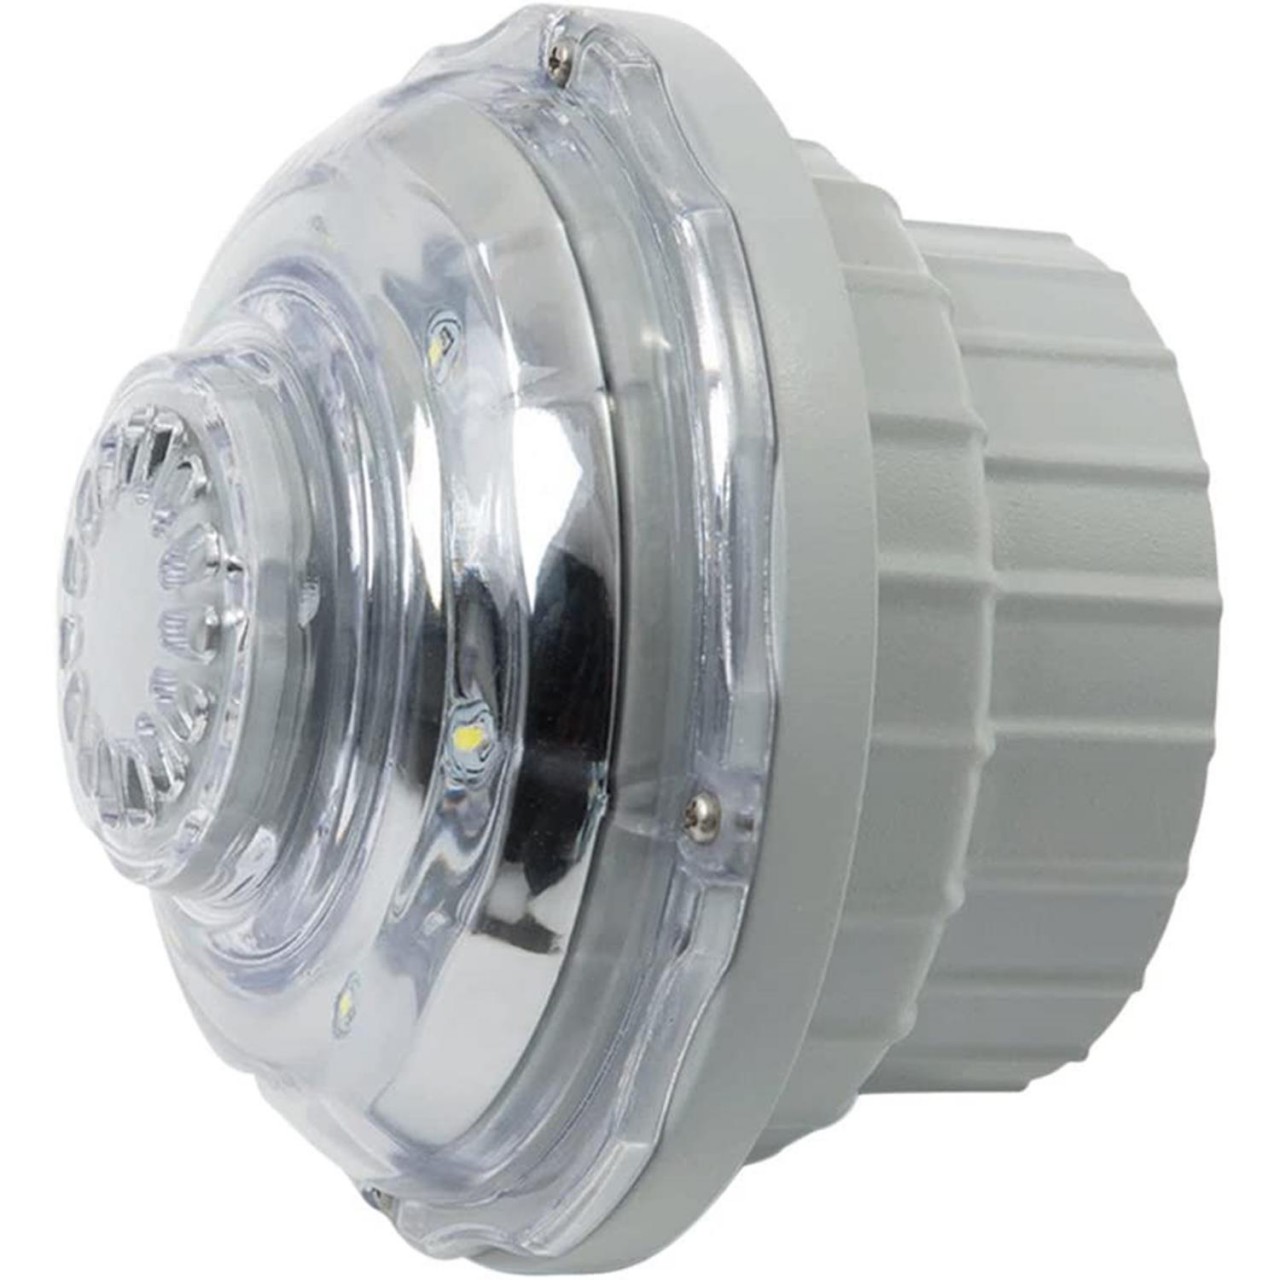 Intex 28692 LED-Licht mit Wasserkraft-Funktion 38mm Anschlüsse Pool Lichter